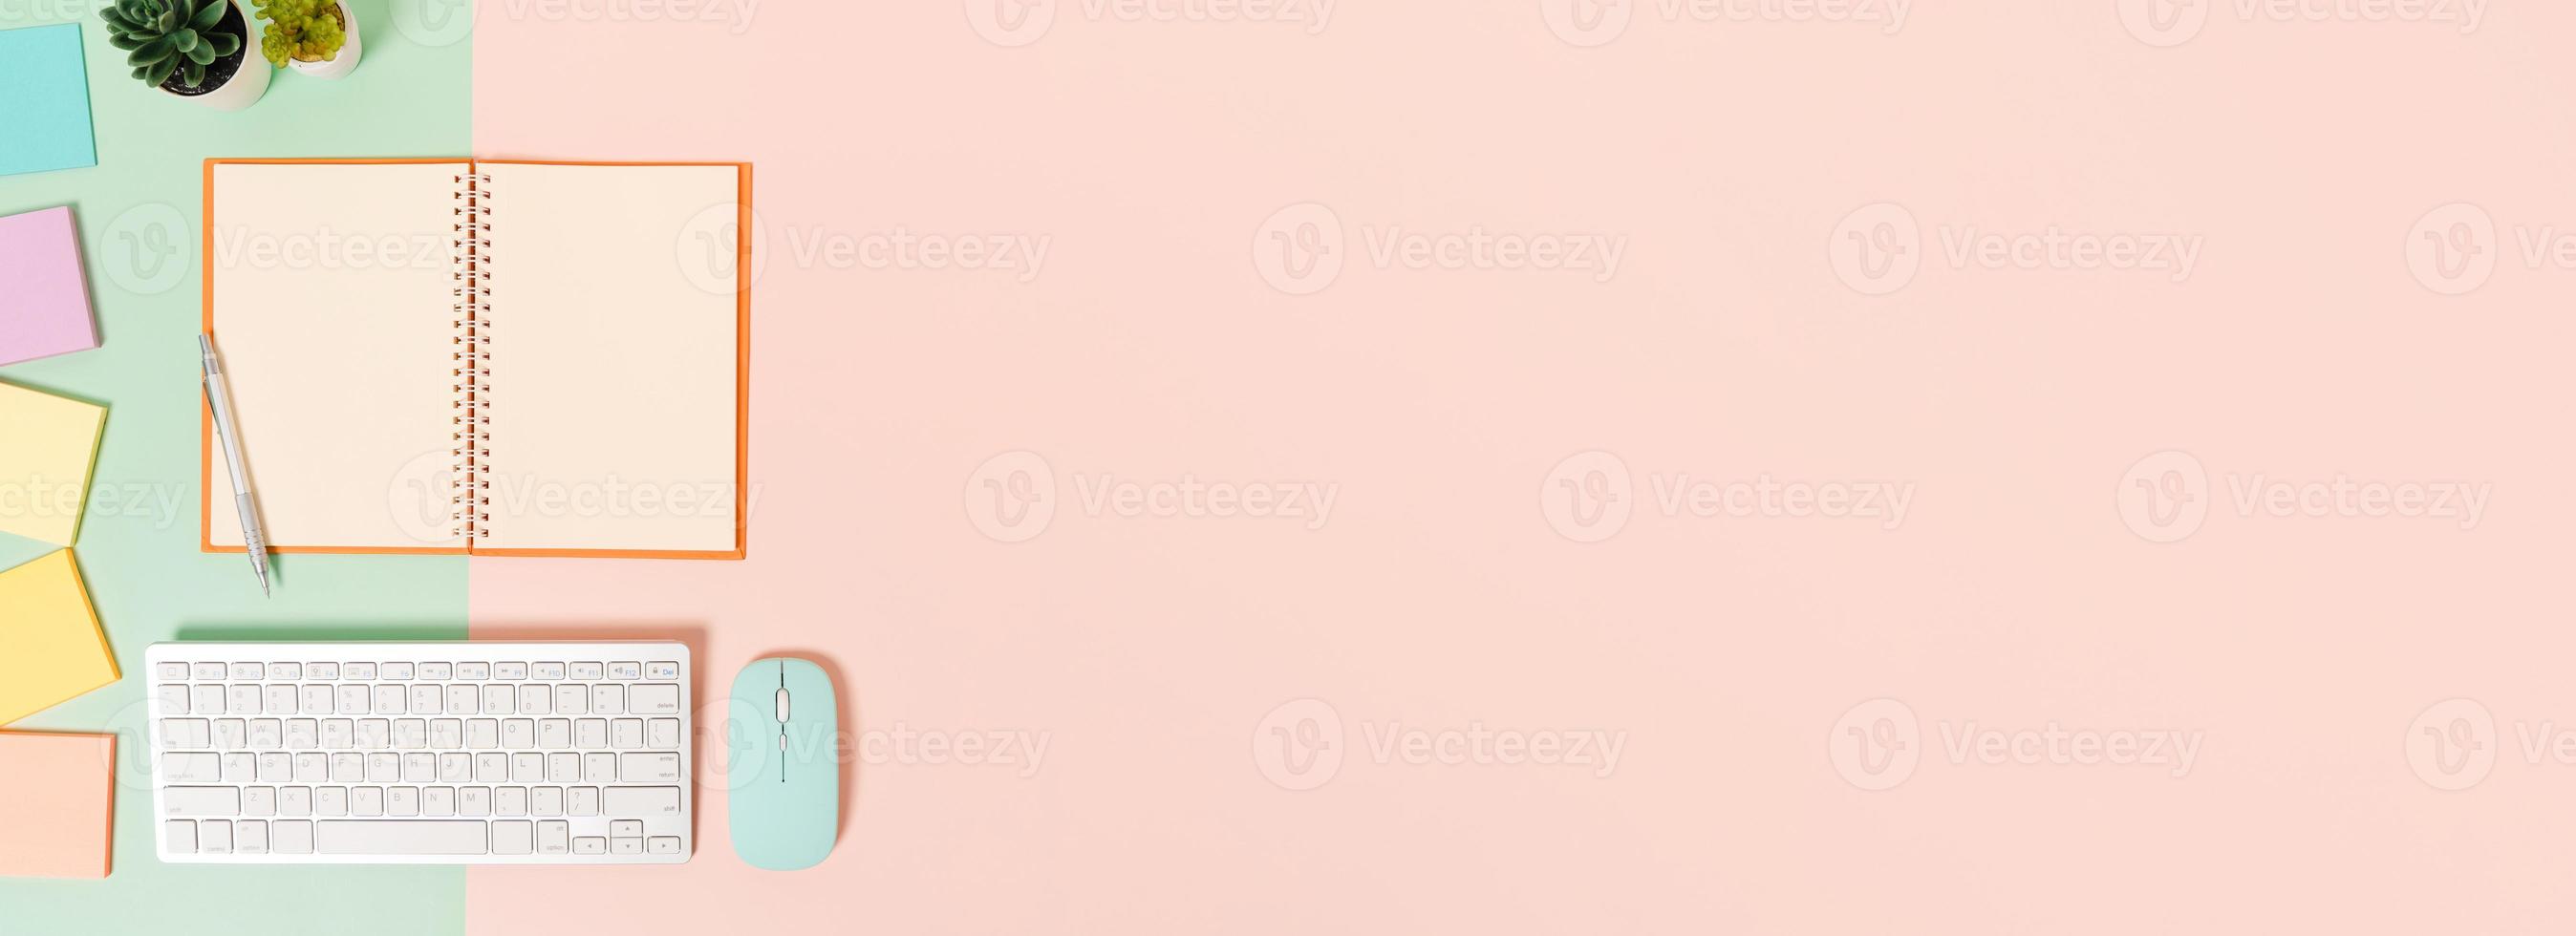 foto plana leiga criativa da mesa do espaço de trabalho. mesa de escritório de vista superior com teclado, mouse e caderno preto de maquete aberta sobre fundo de cor rosa verde pastel. vista superior simulada com fotografia do espaço da cópia.